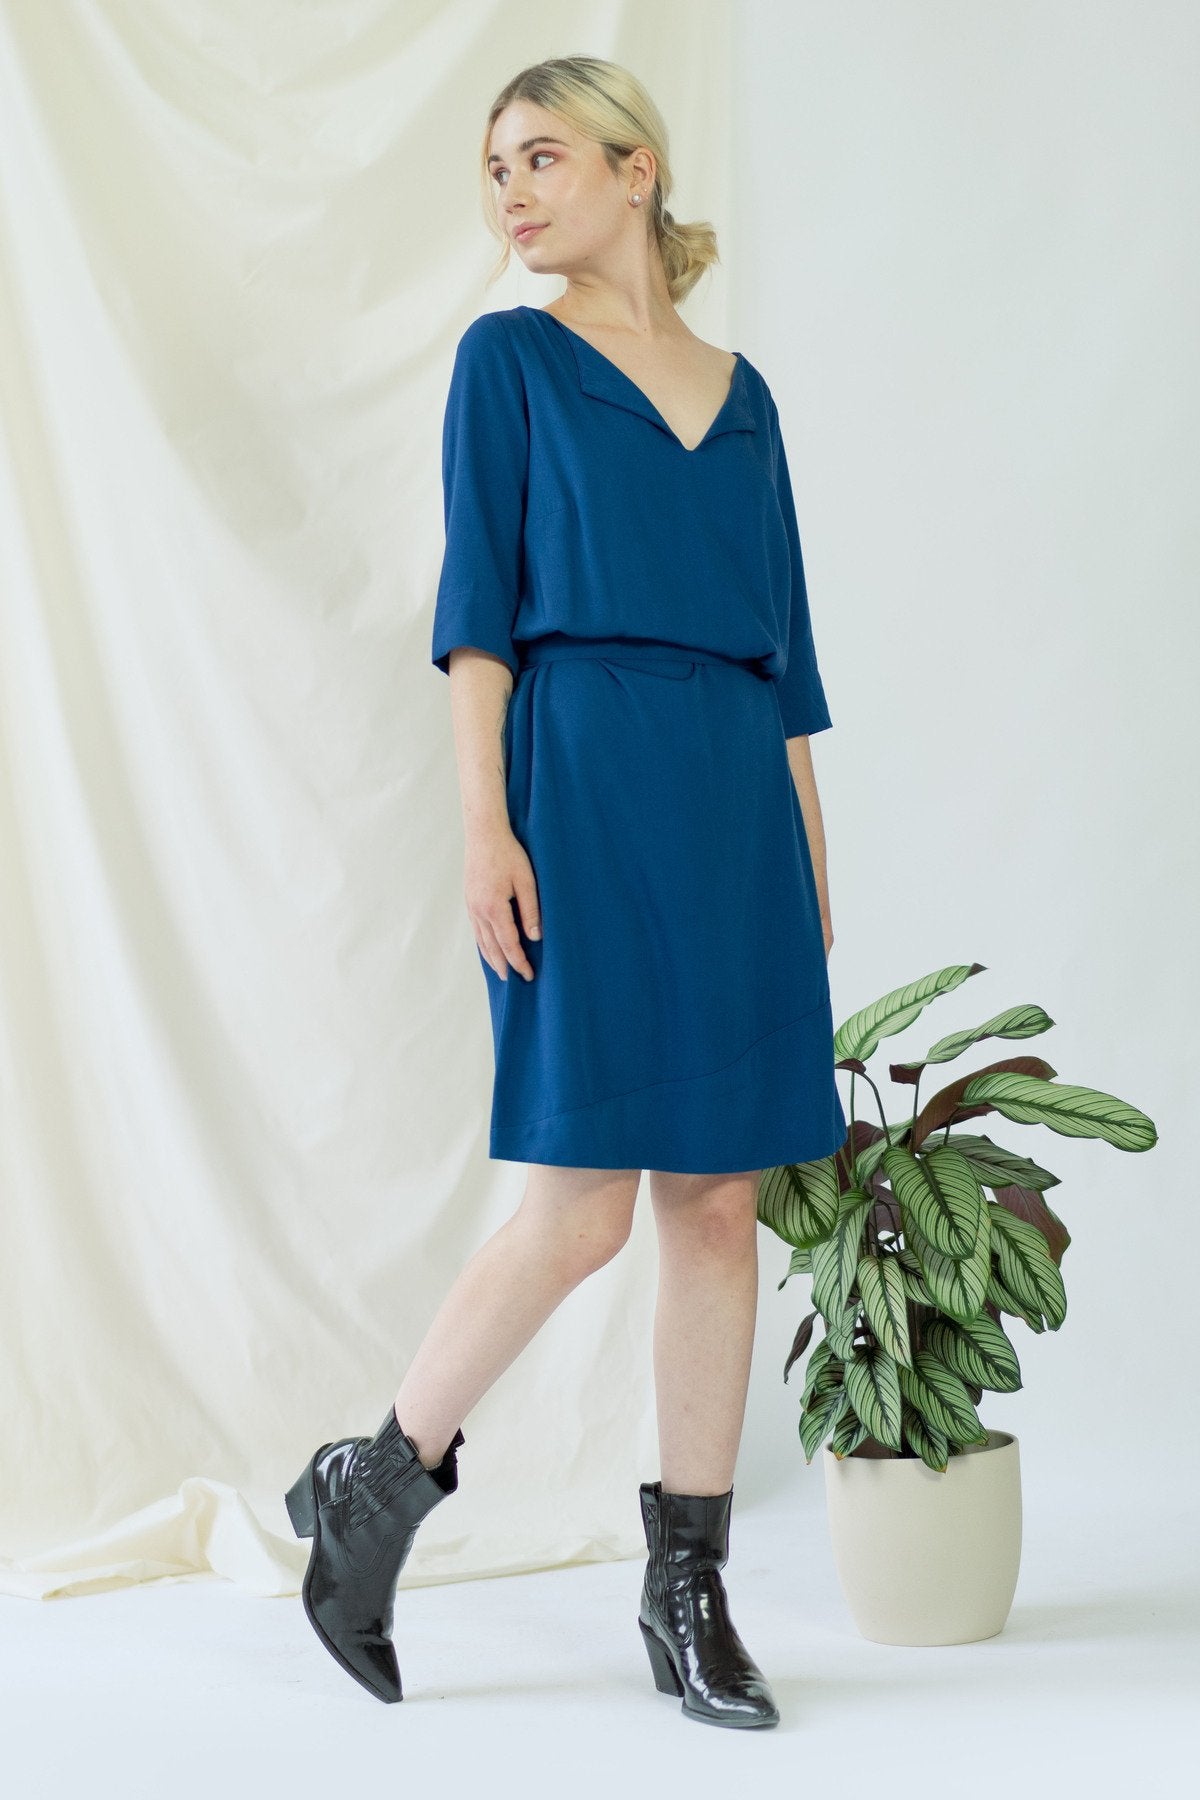 Catherine | Kleid mit optionalem Gürtel in klassischem Blau